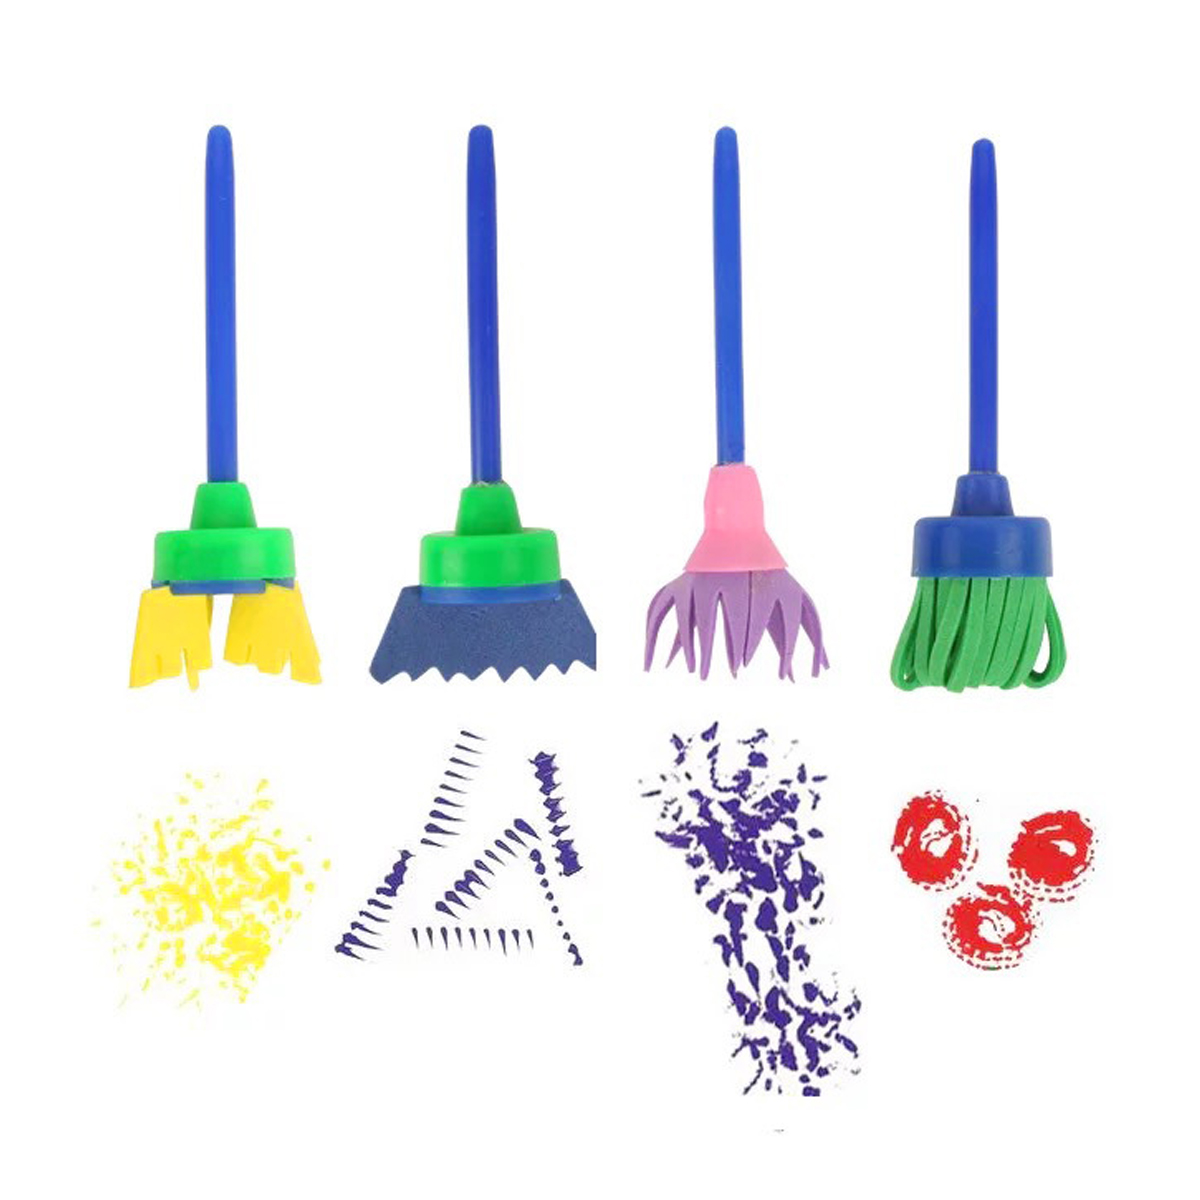 30pcs-Child-Paint-Roller-DIY-Painting-Toys-Sponge-Brush-Kit-Set-Graffiti-Drawing-Tools-for-Kids-Earl-1836475-3